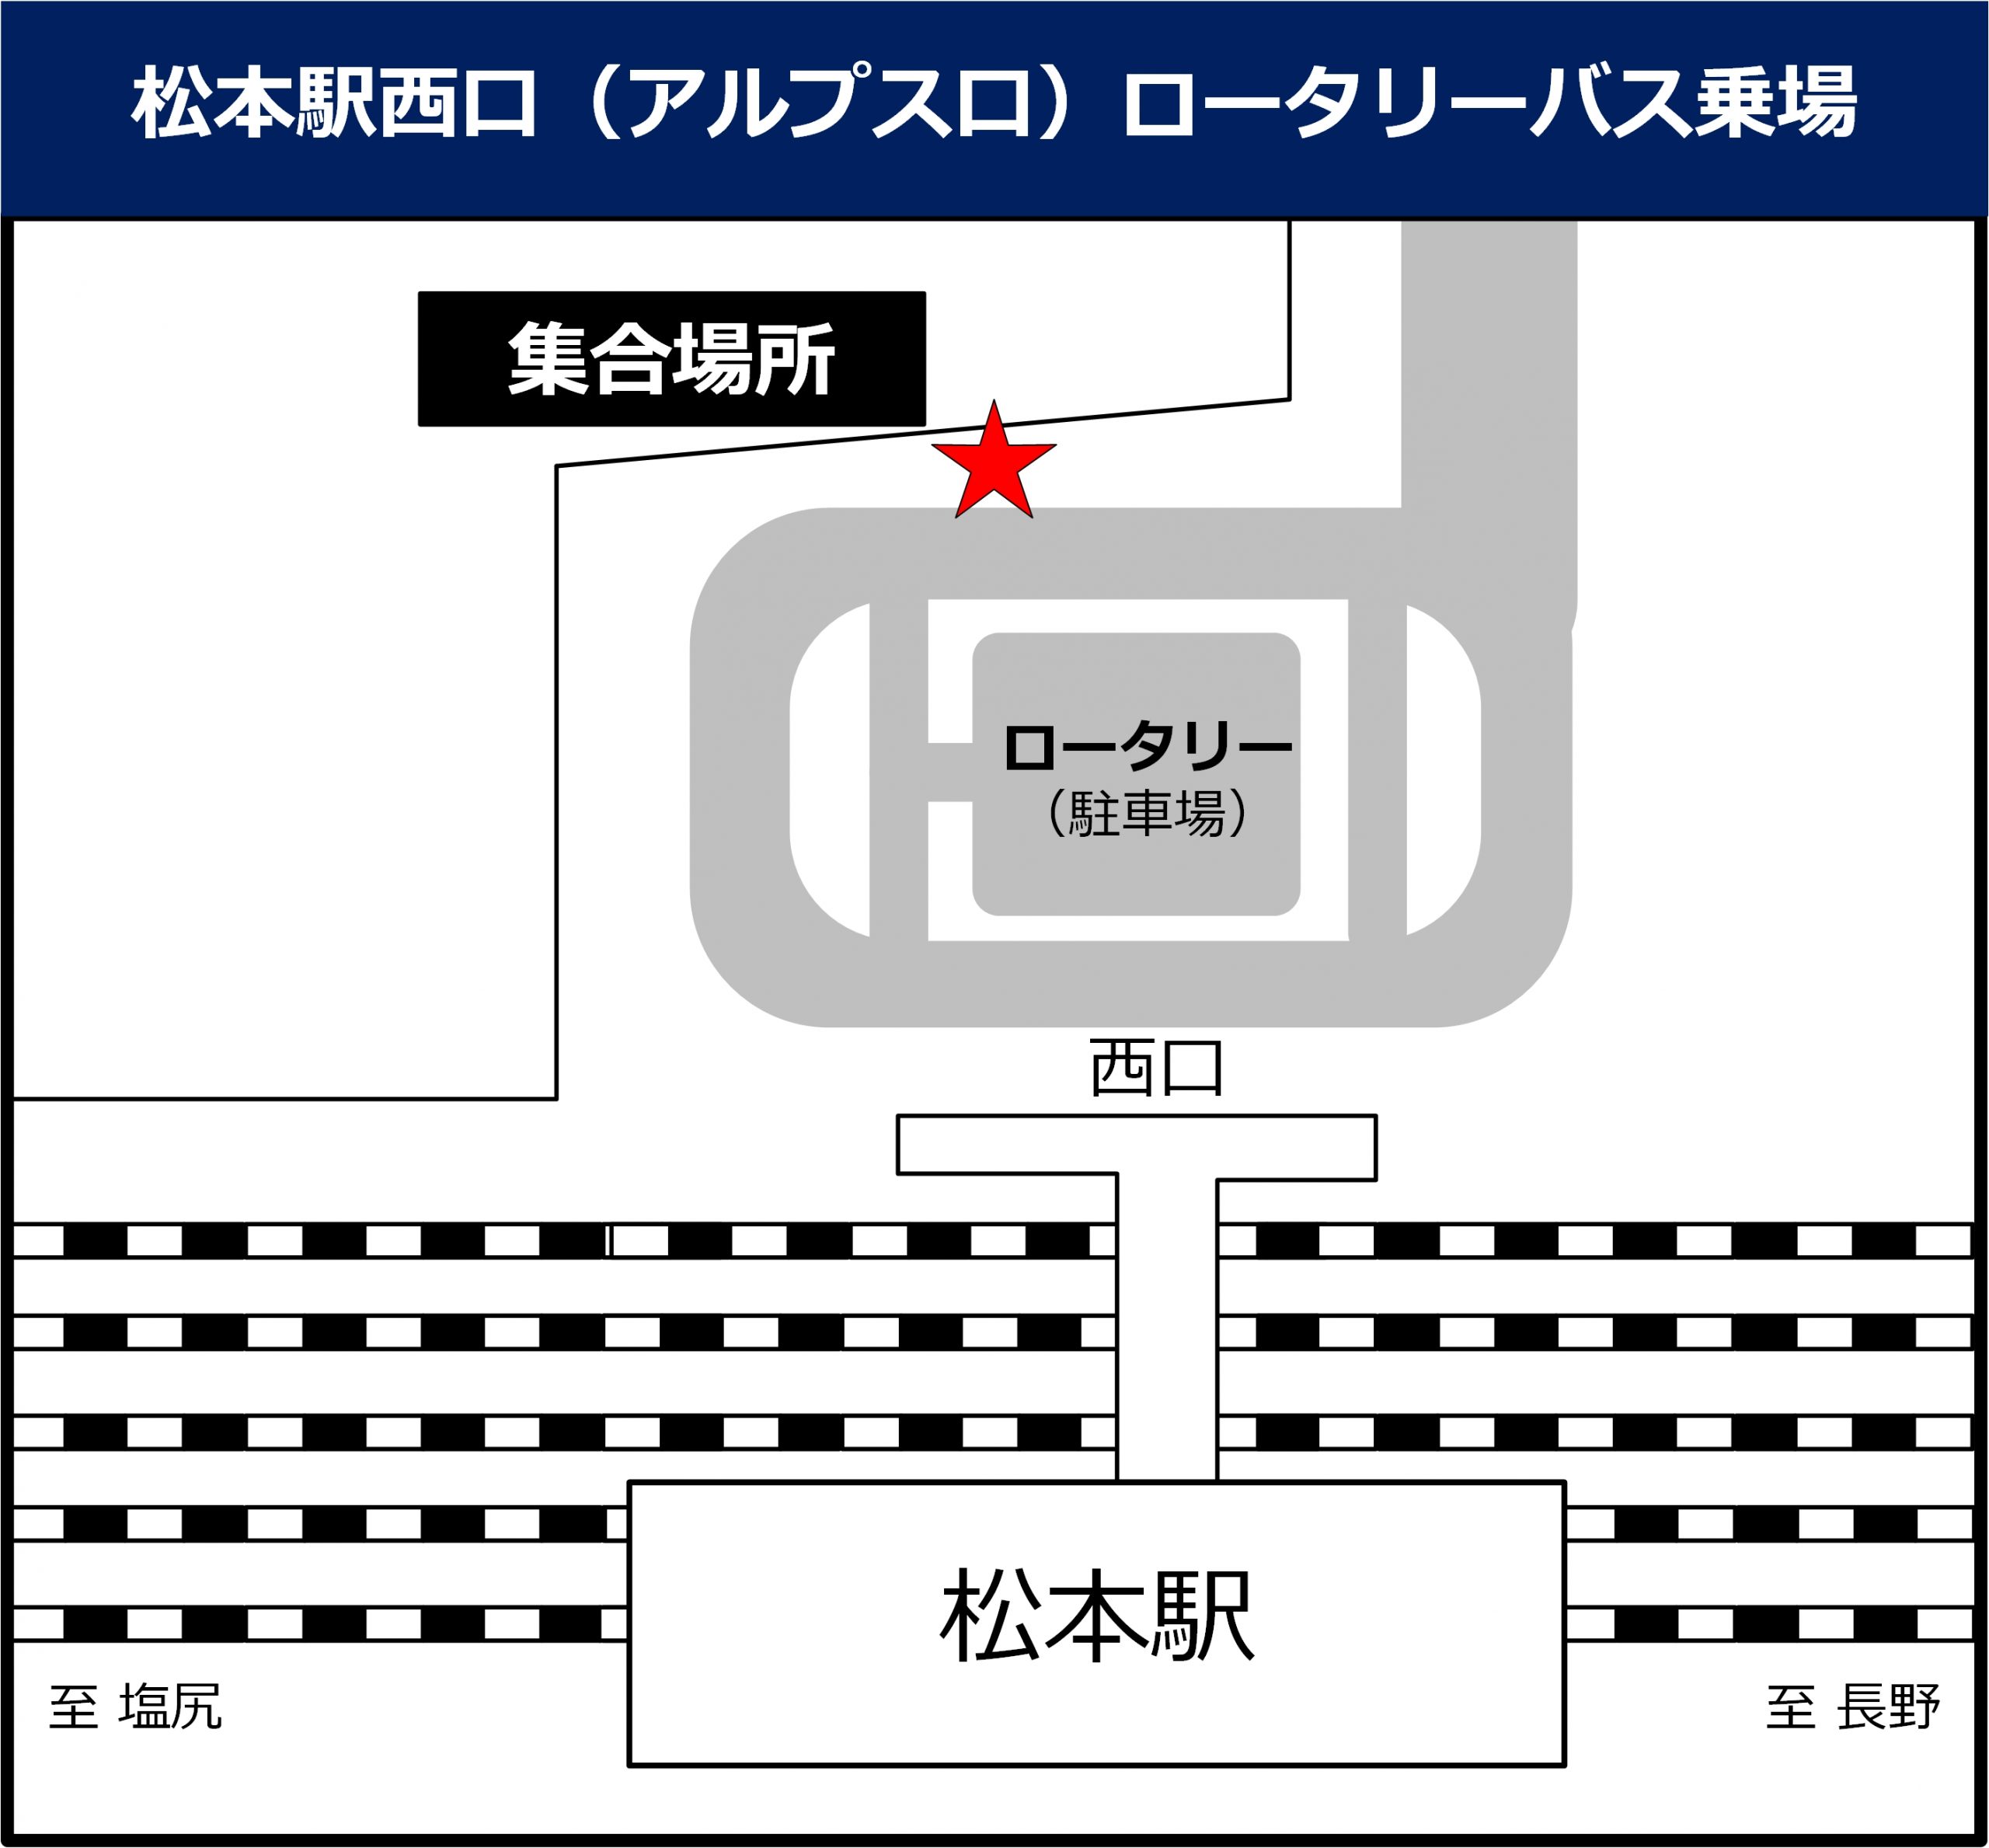 松本駅西口 (アルプスロ)ロータリーバス乗場の地図